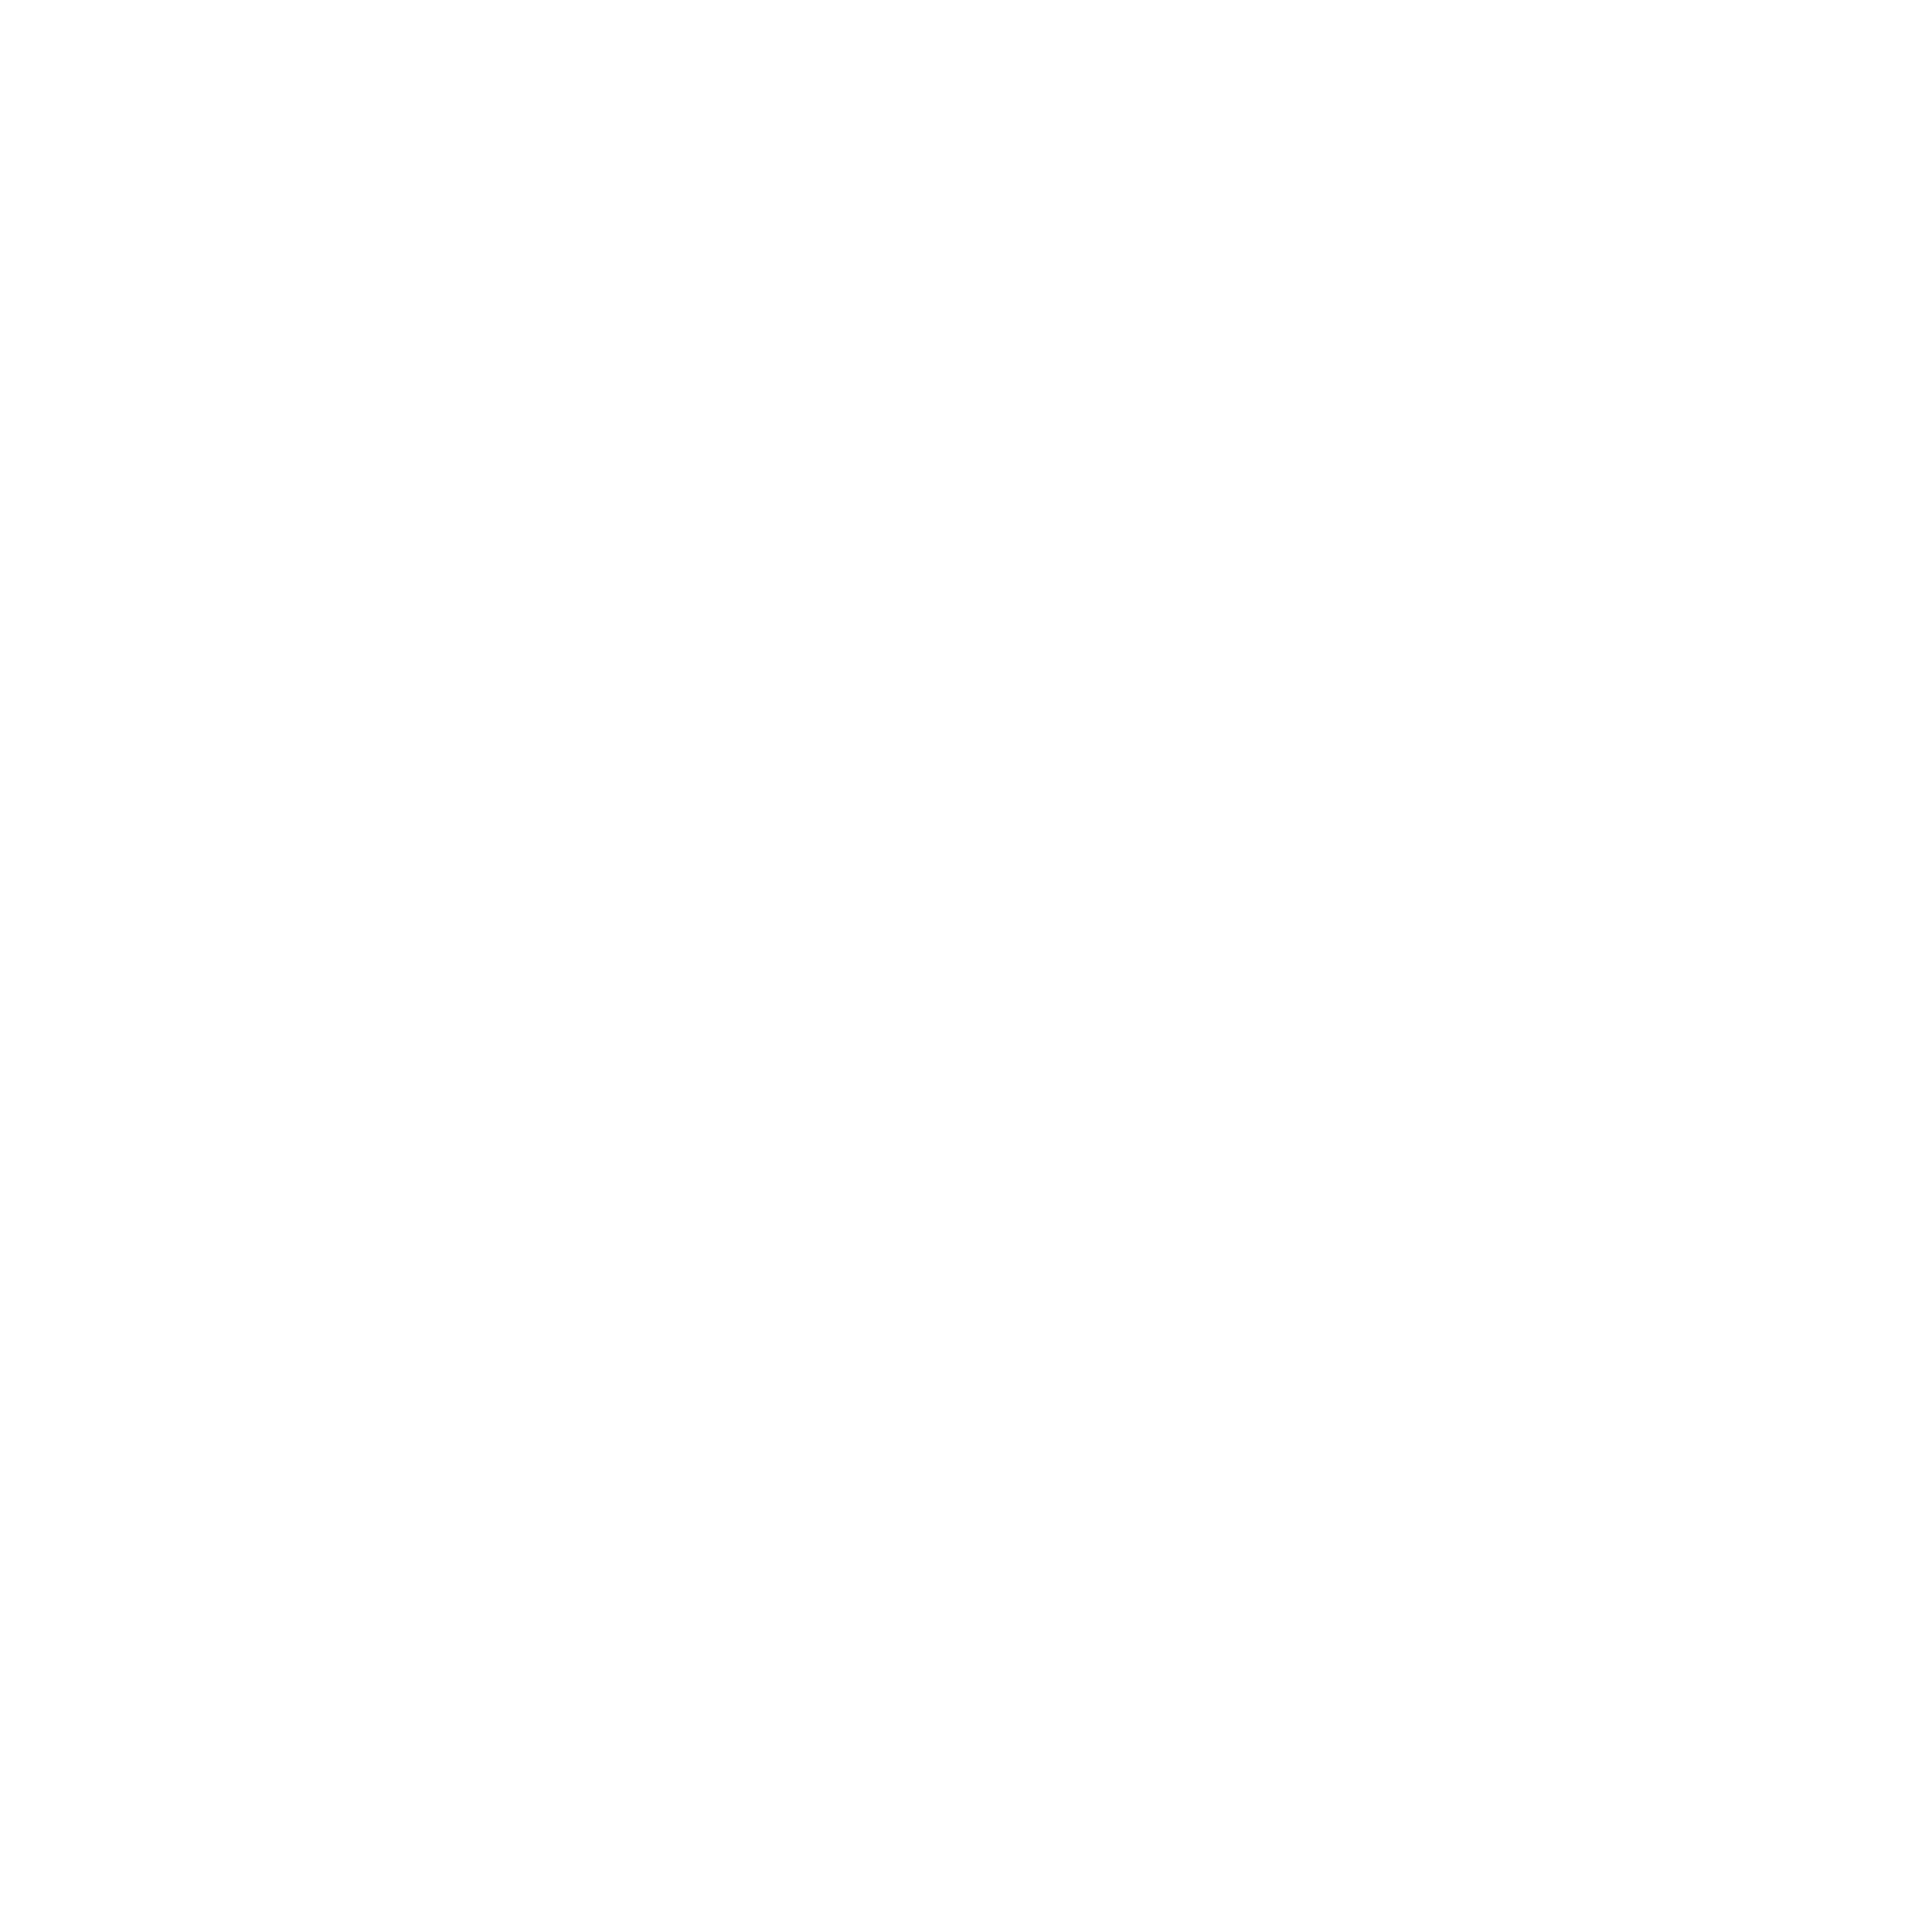 datiss